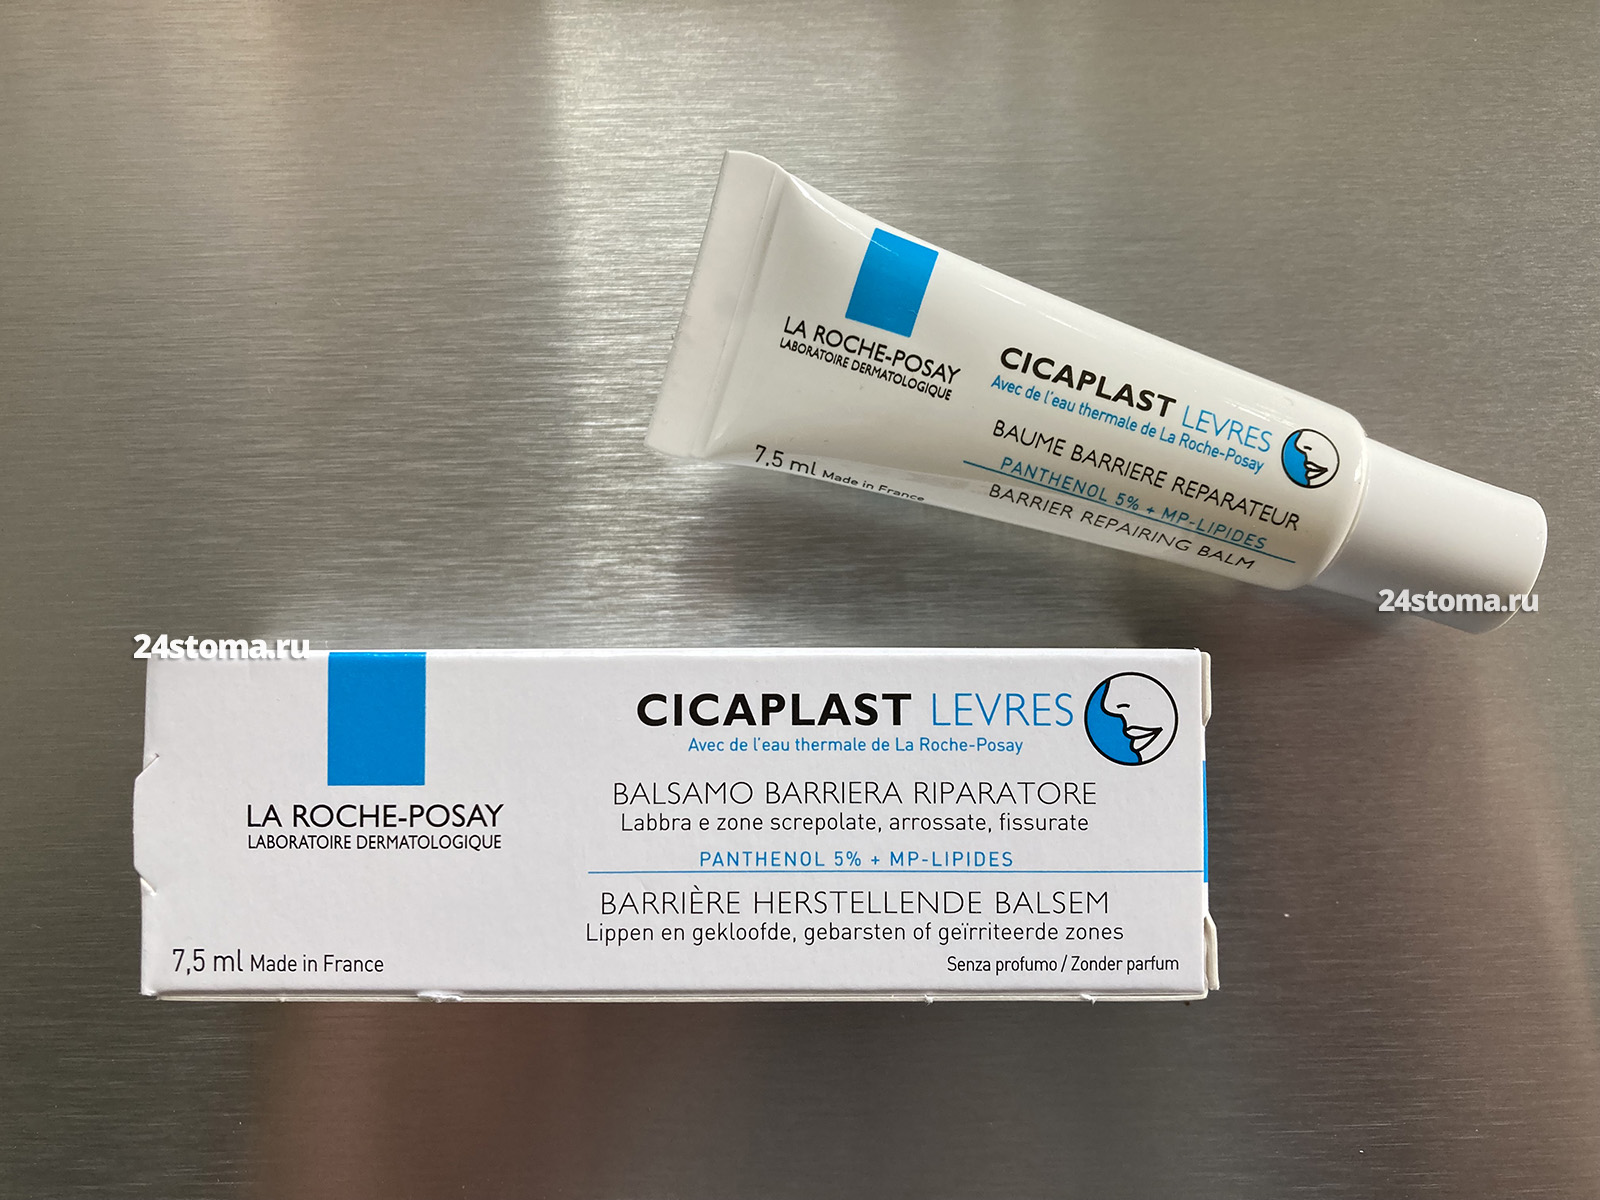 Бальзам для губ – Cicaplast (от La Roche-Posay)